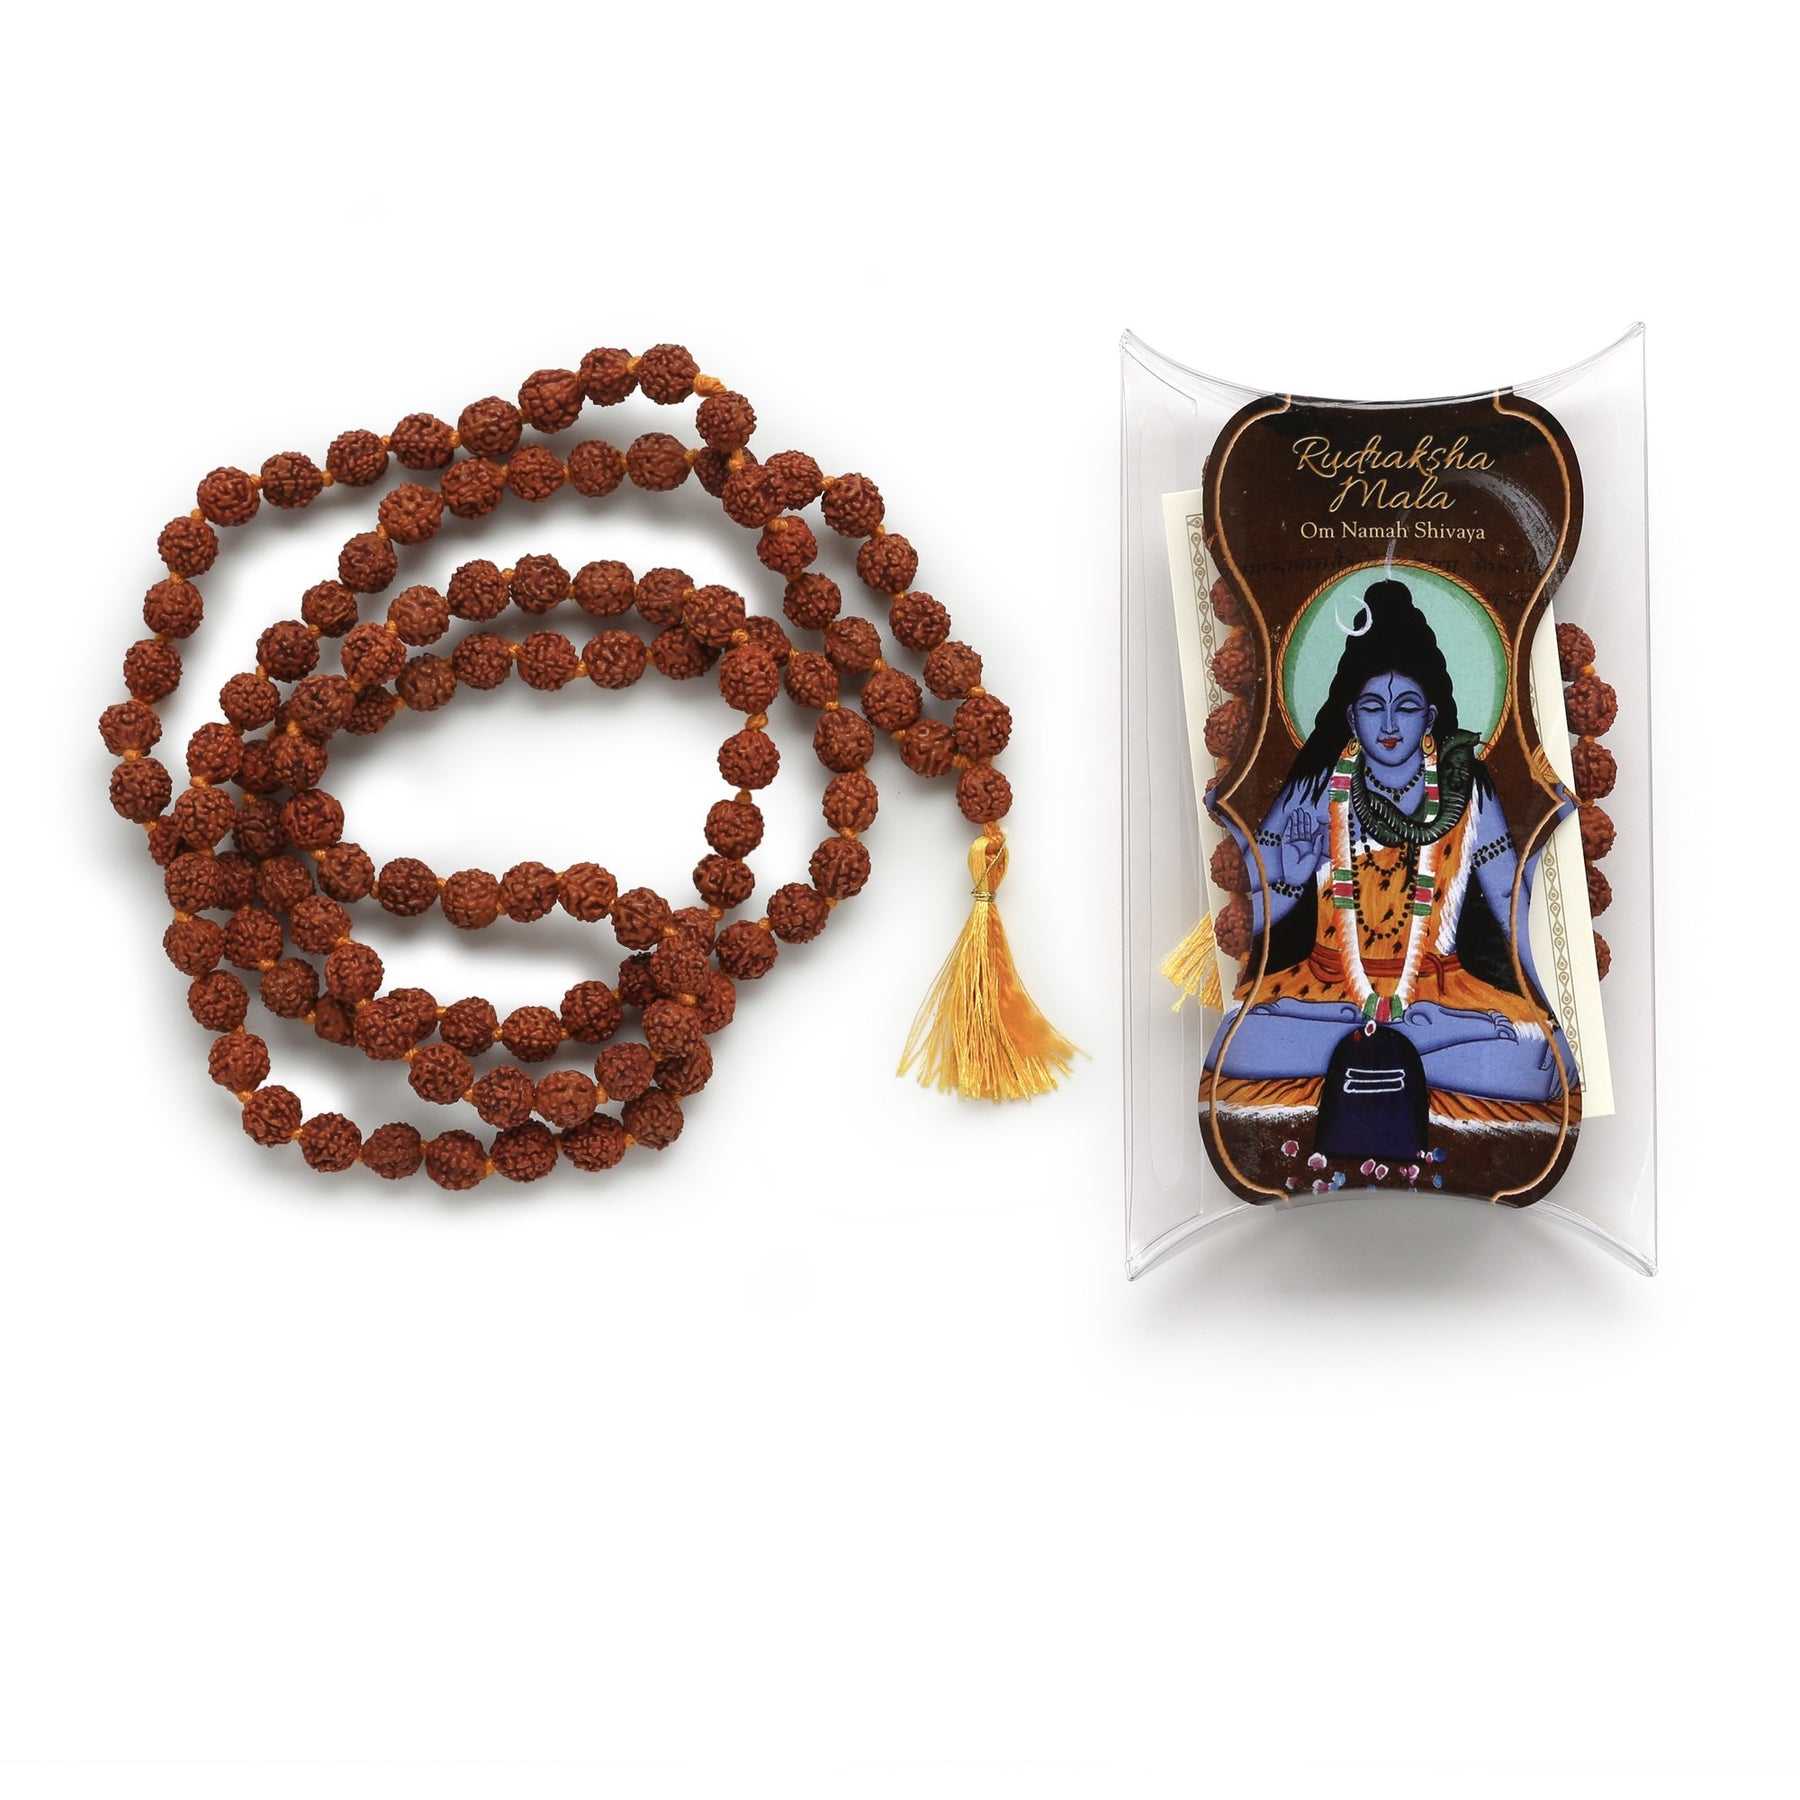 Mala Prayer Bead Design Options  Mala jewelry, Mala prayer beads